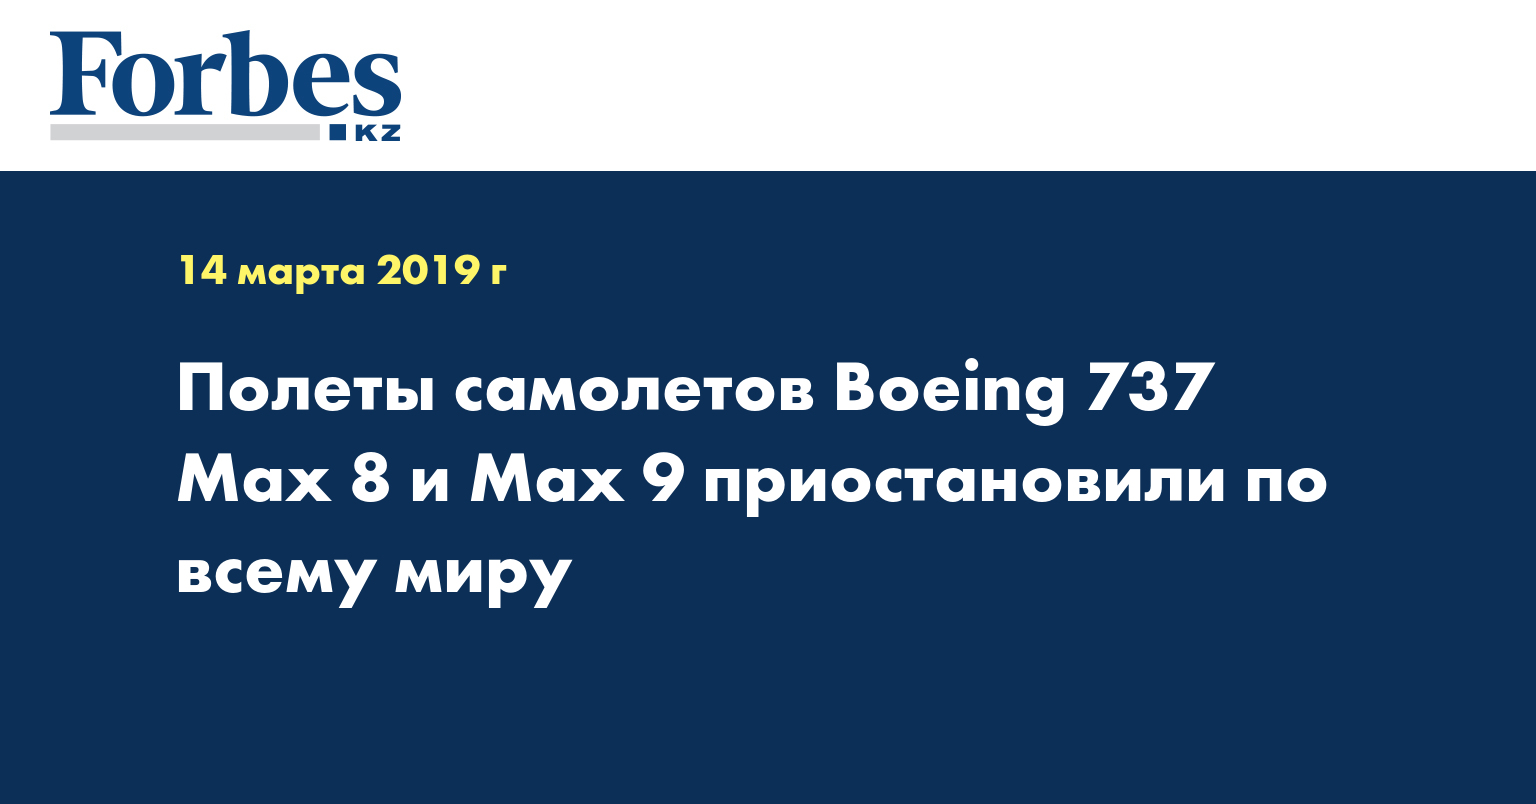 Полеты самолетов Boeing 737 Max 8 и Max 9 приостановили по всему миру